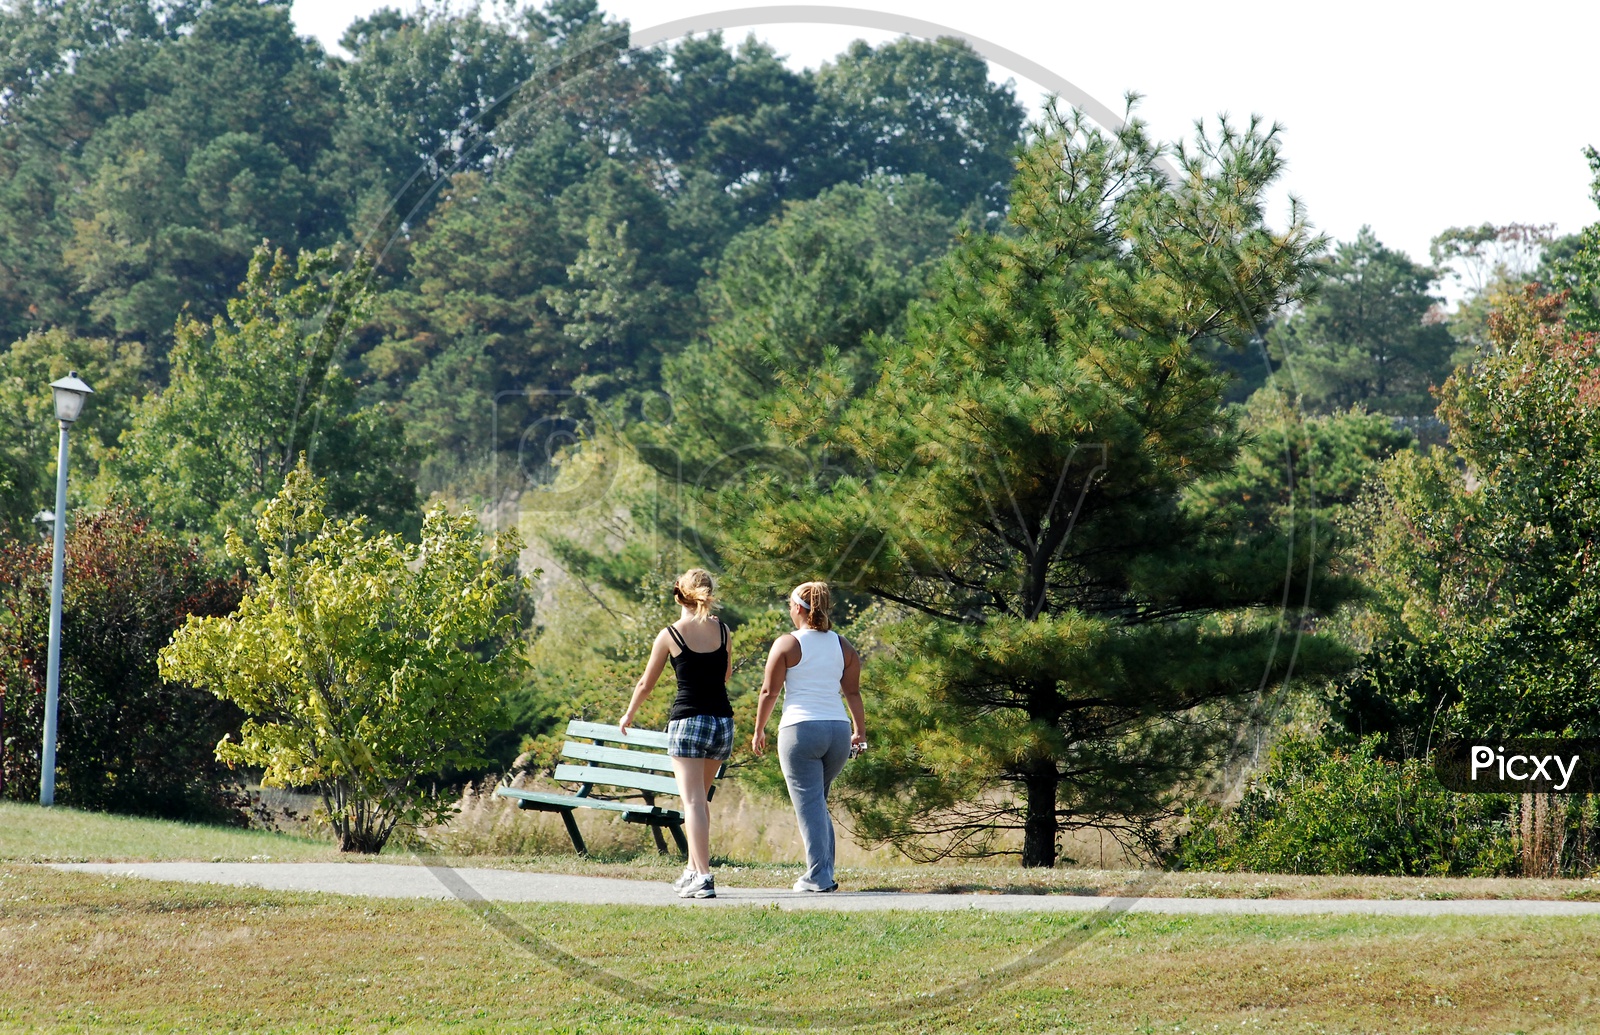 Swiss women jogging in the park